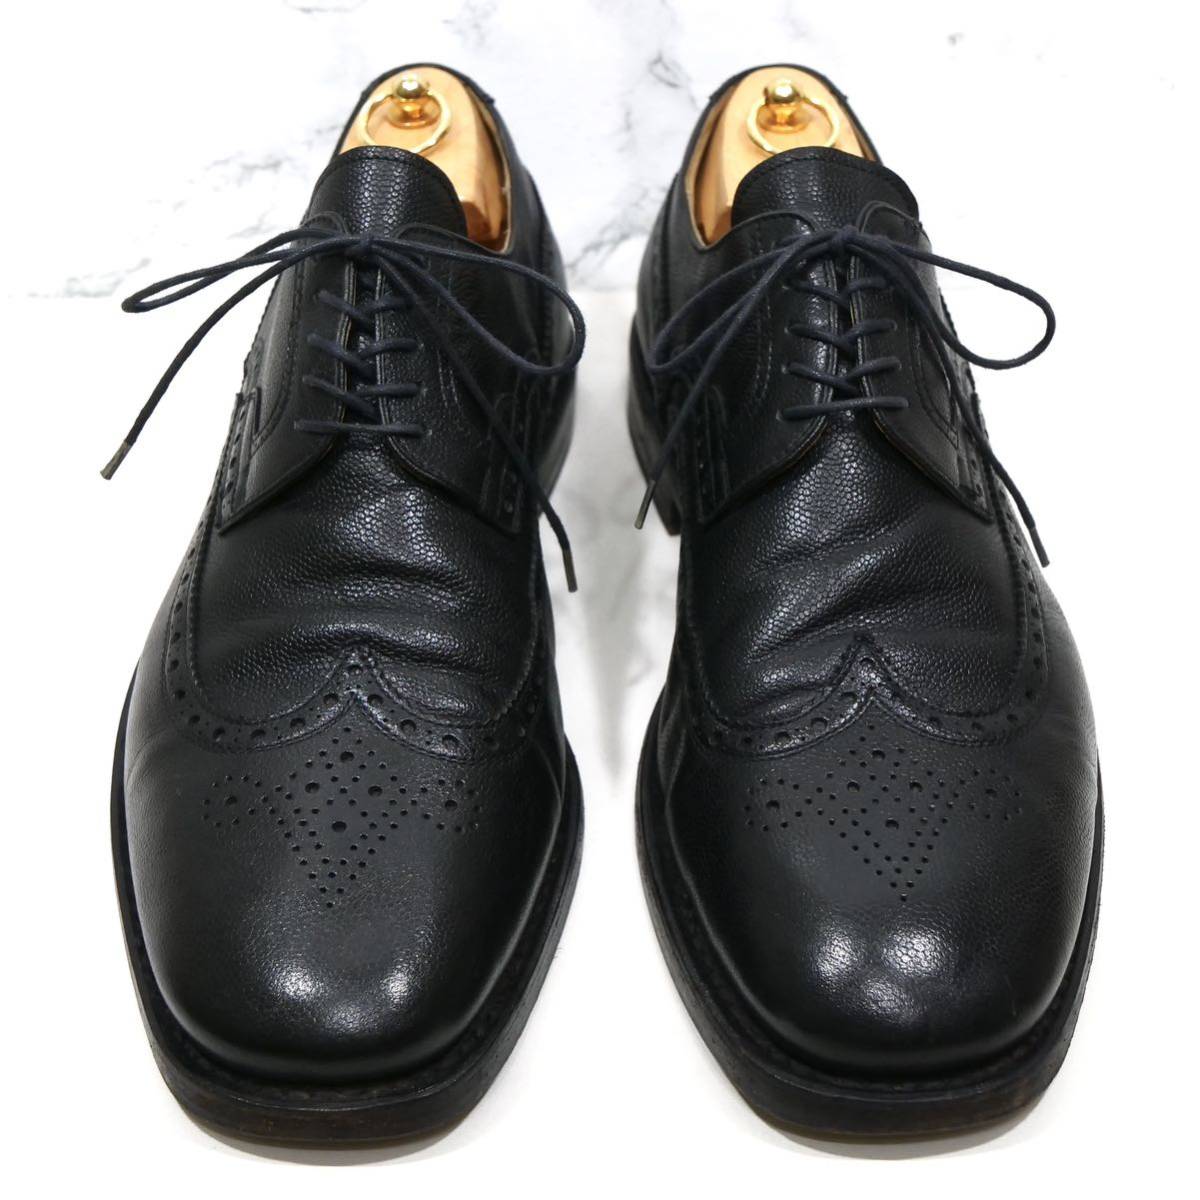 最高峰◎【Laszlo BUDAPEST】ラズロブダペスト UK10.5 28.5cm前後 ブラック ビジネスシューズ カジュアル メンズ 革靴_画像2